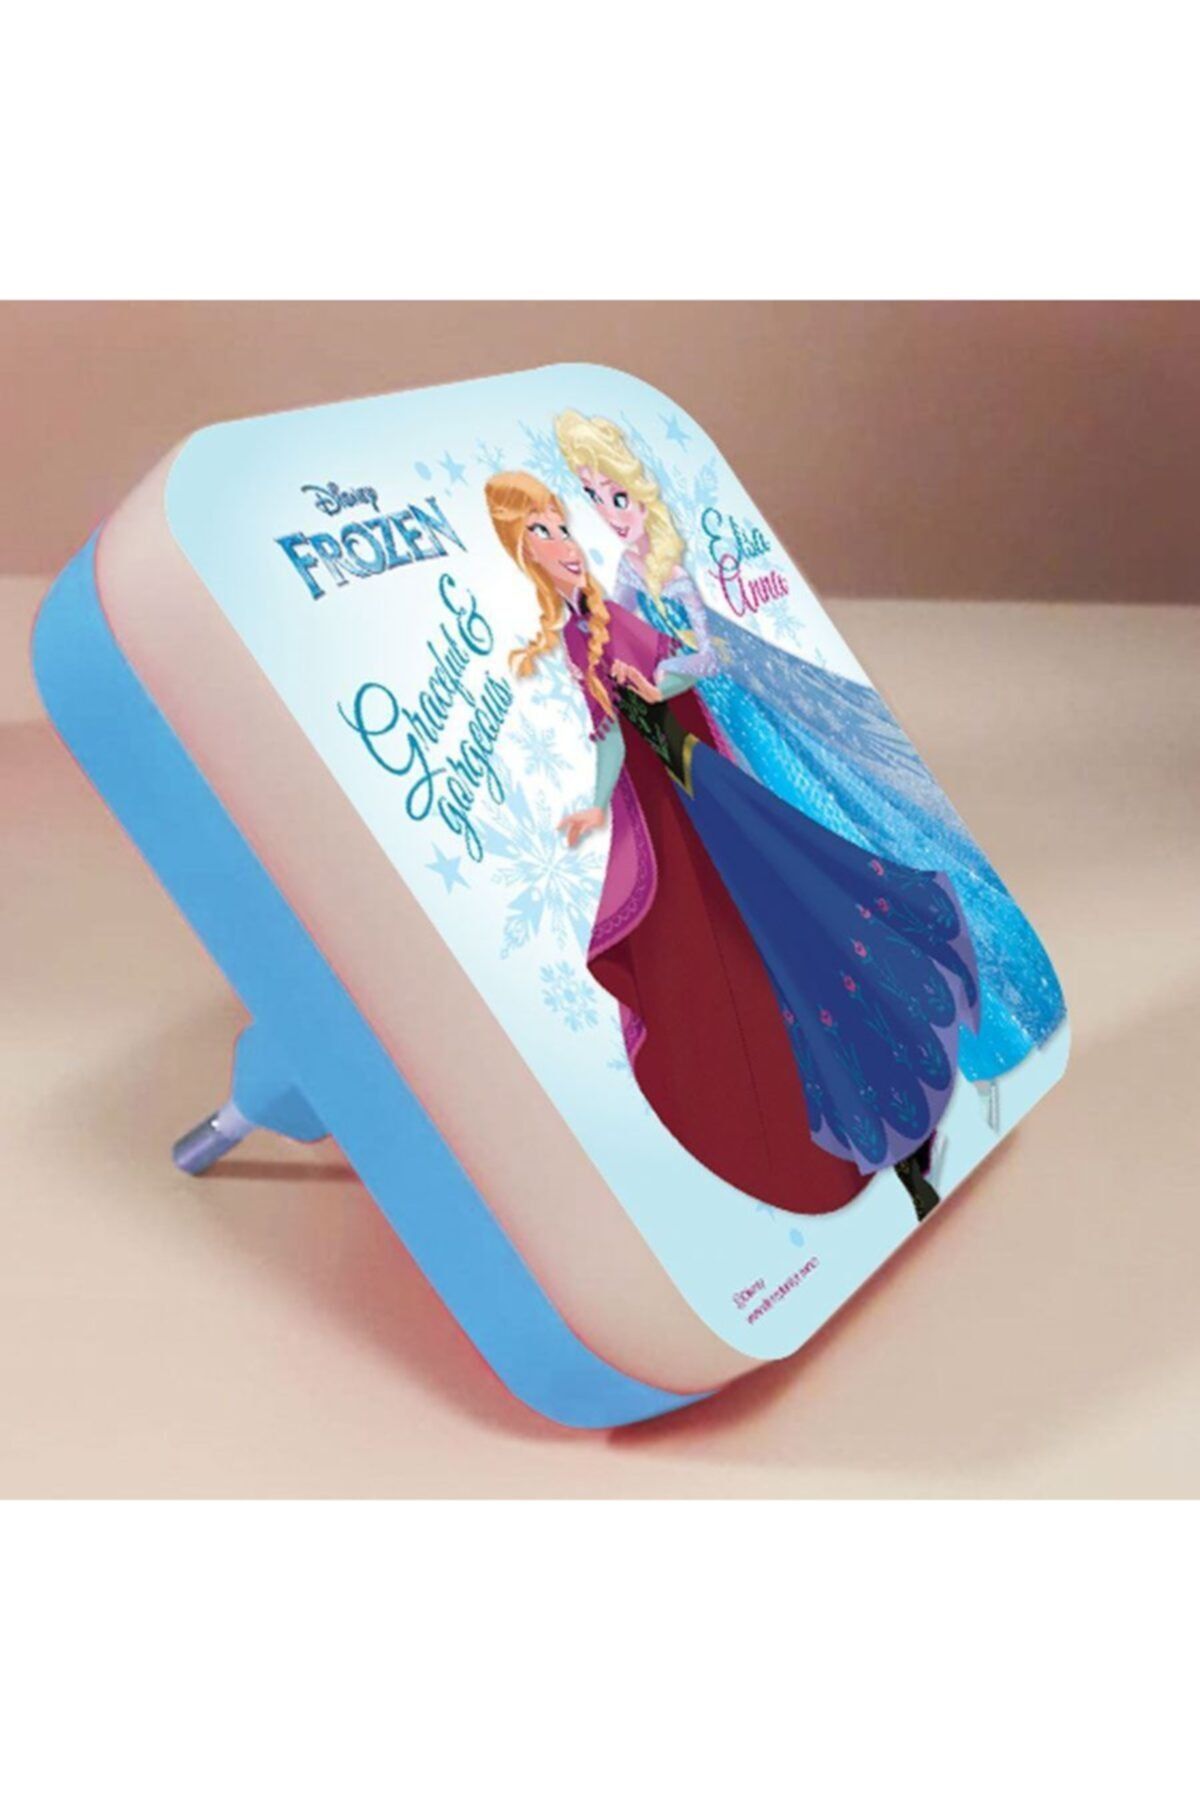 HOMİNG Frozen Elsa Mini Gece Lambası, Led' Li / Lisanslı Ürün